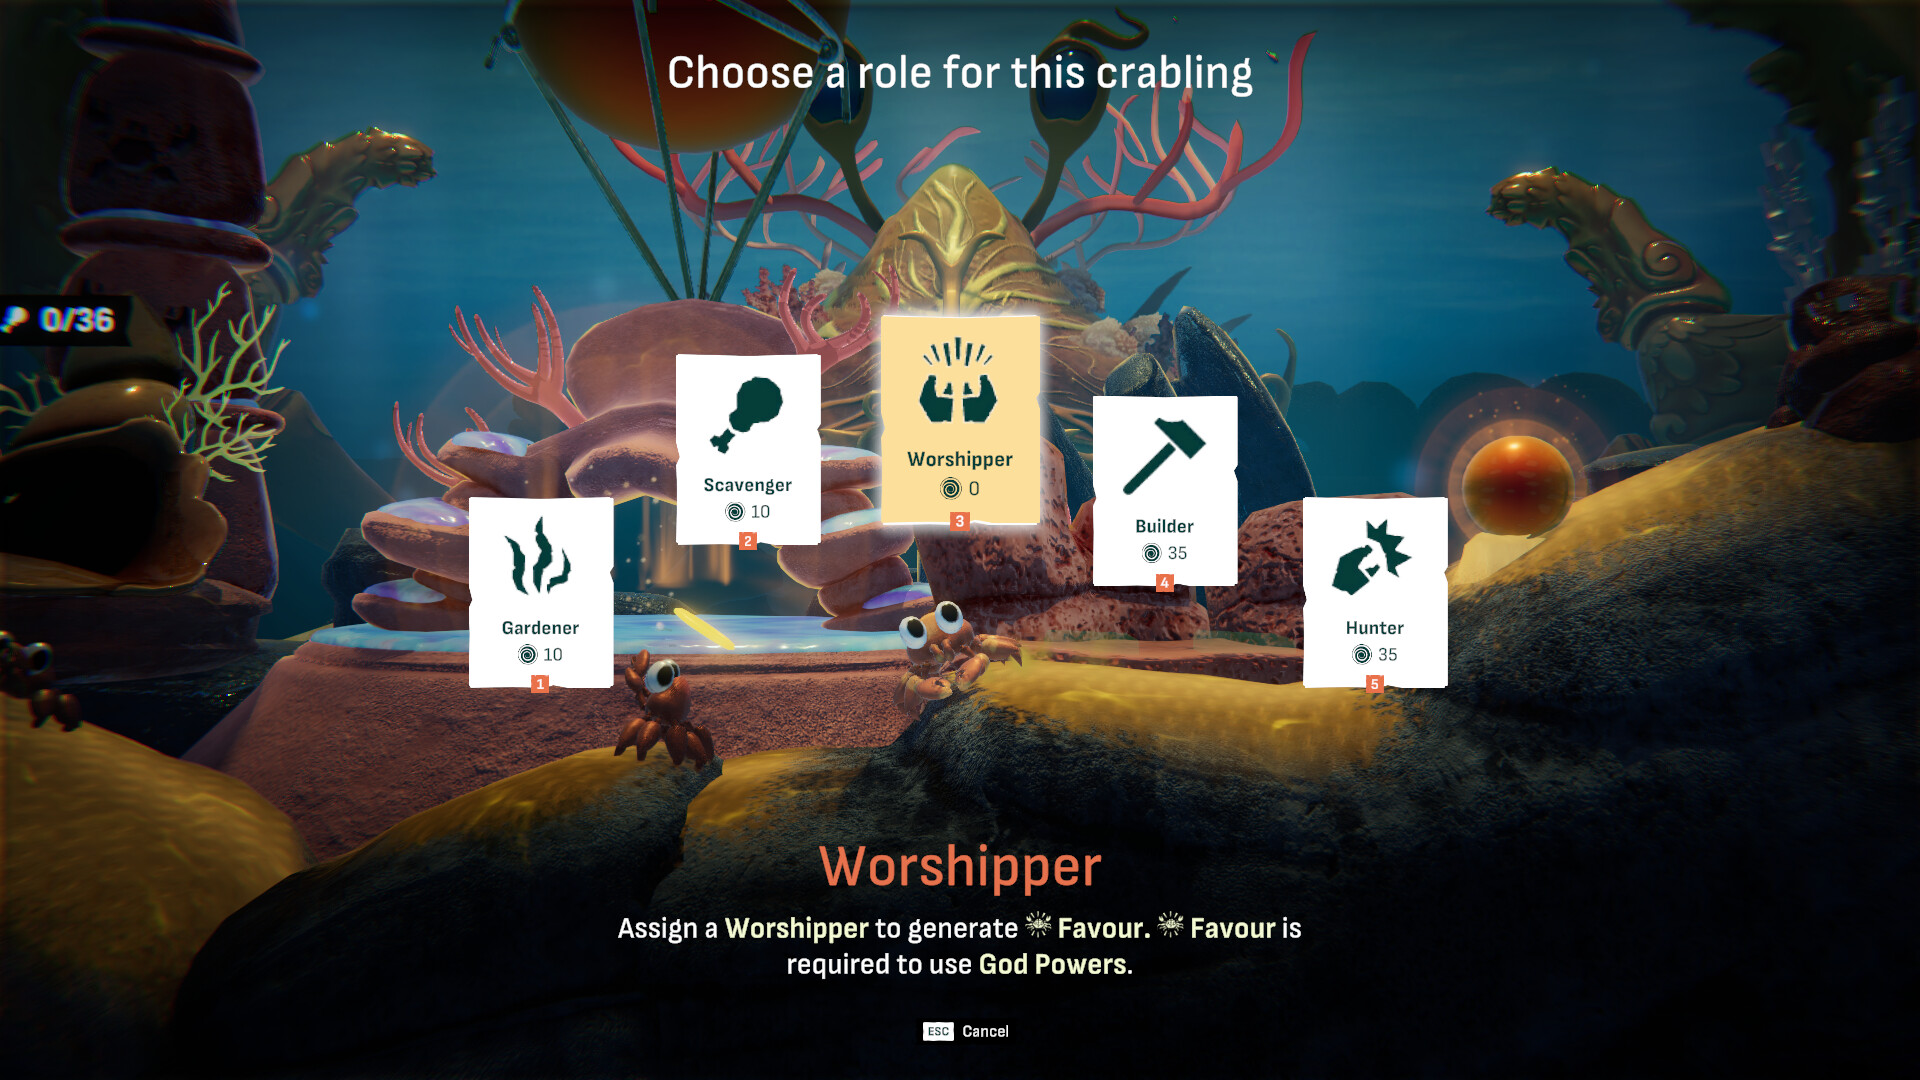 策略模拟游戏《螃蟹之神》现已登录Steam平台 6月20日正式推出